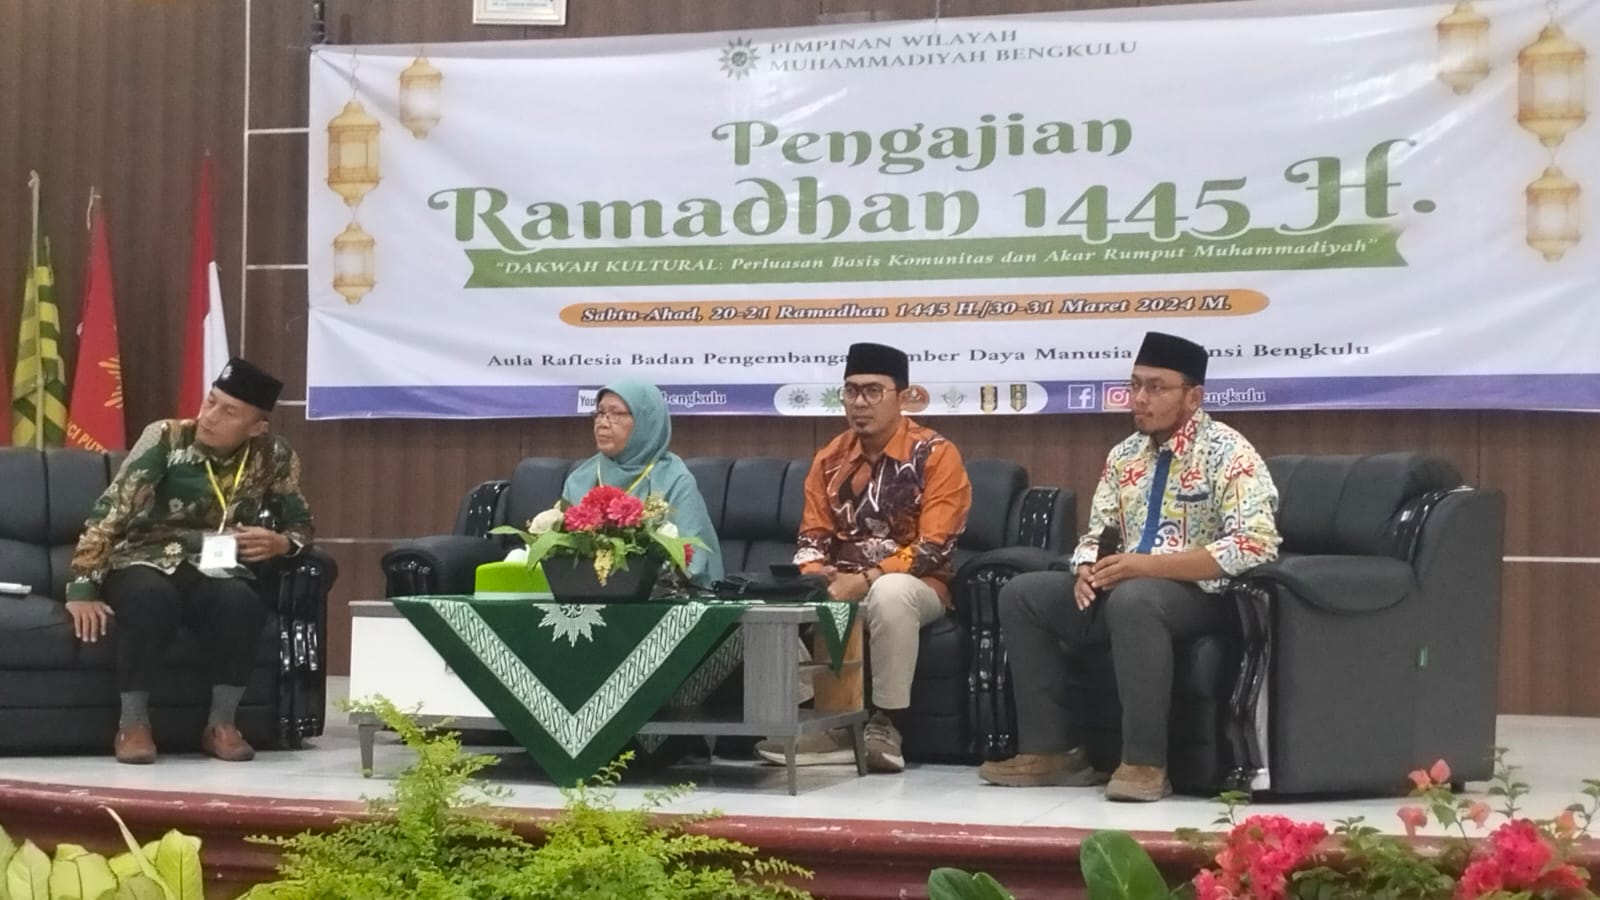 Dakwah Milenial Jadi Garapan Serius Muhammadiyah